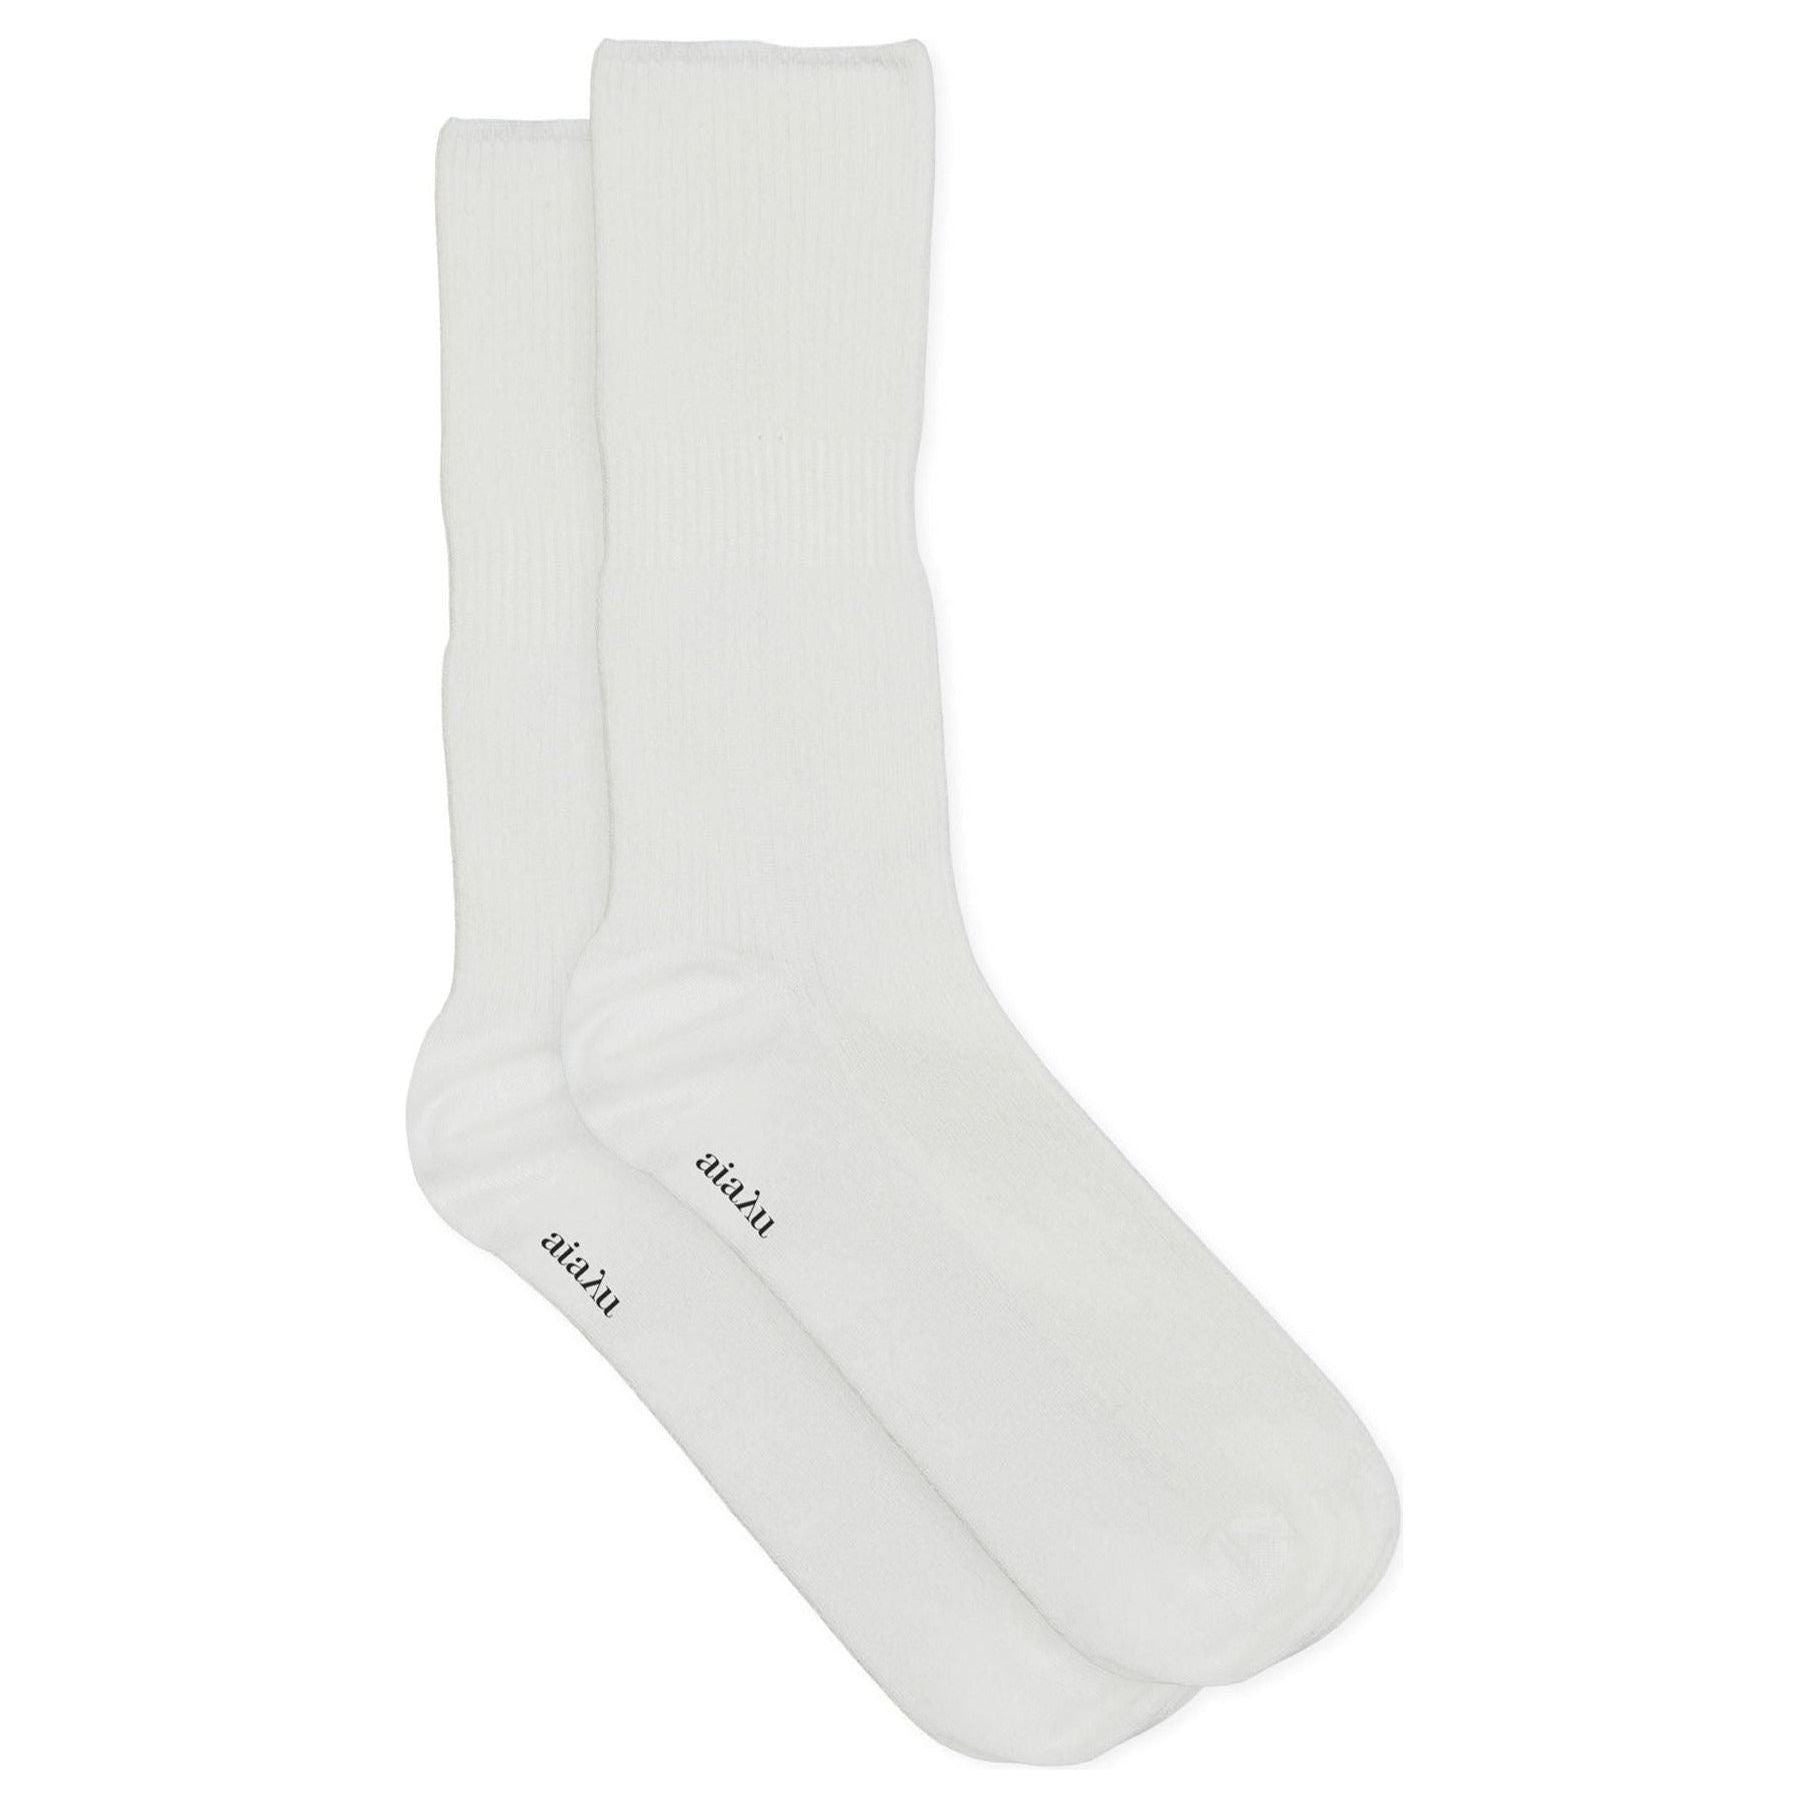 Aiayu W Socks Cotton Rib Socks, White